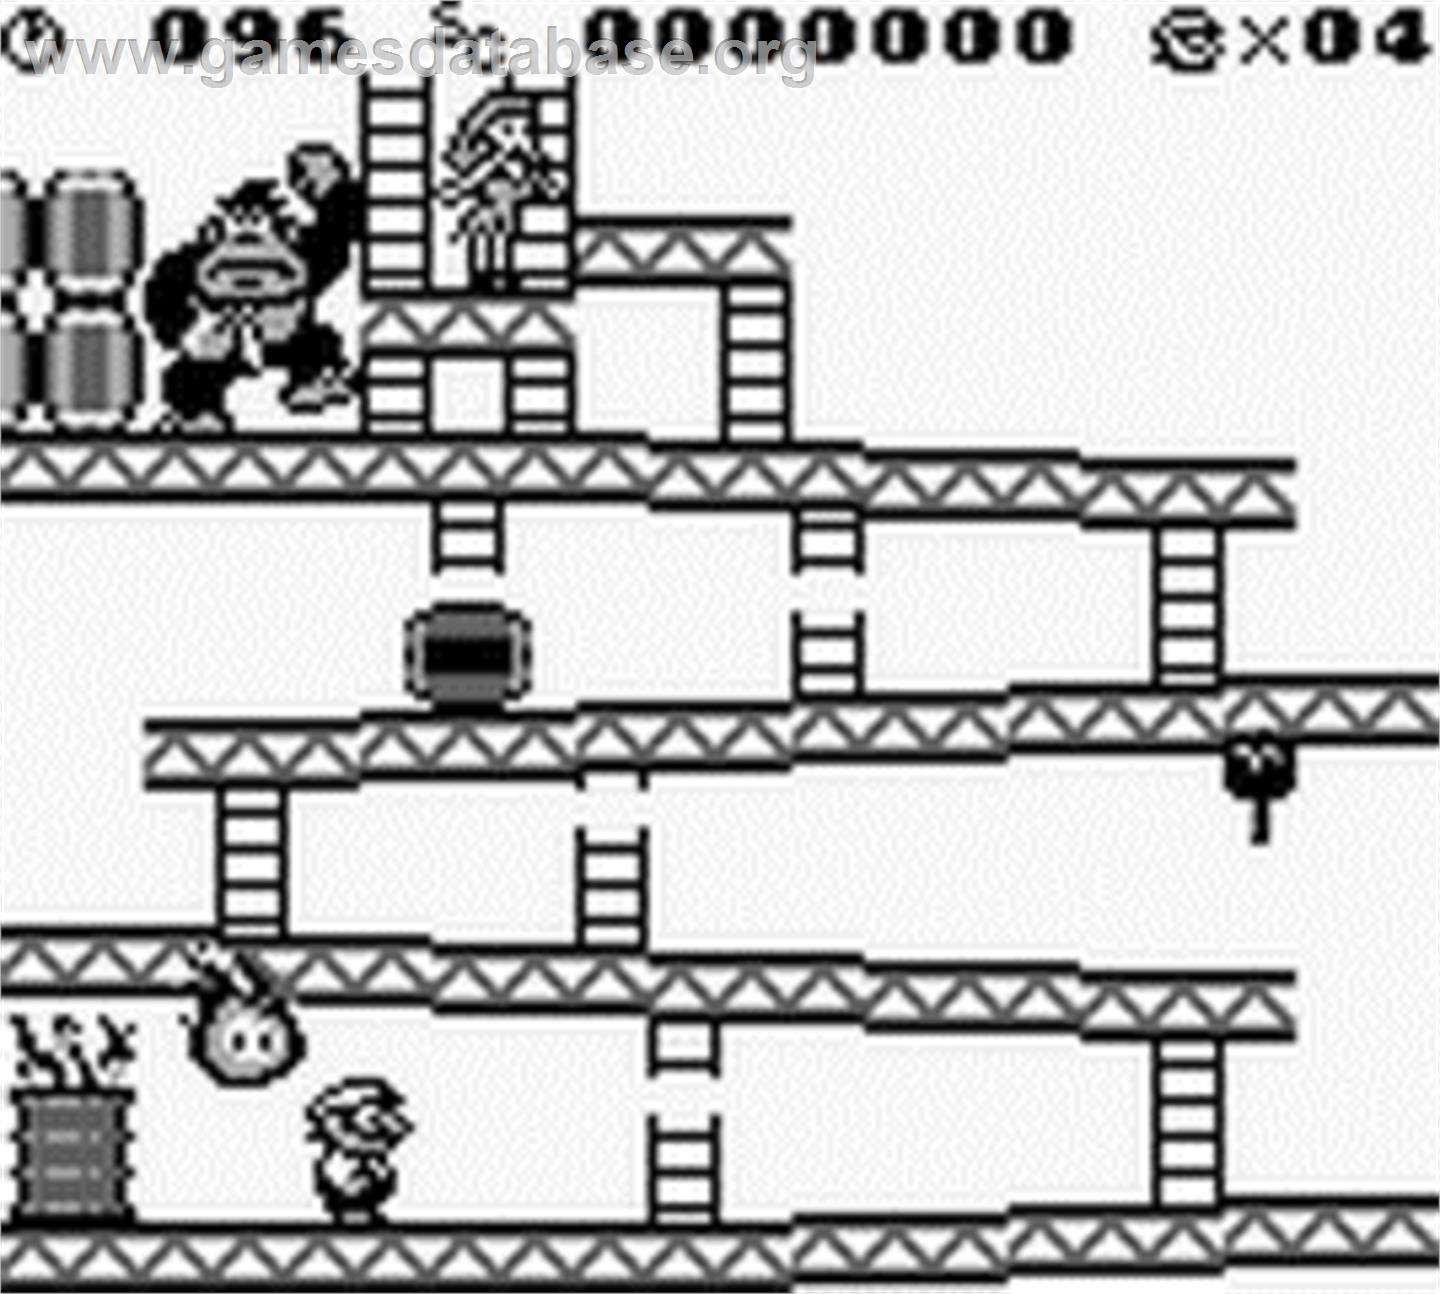 Donkey Kong - Nintendo Game Boy - Artwork - In Game